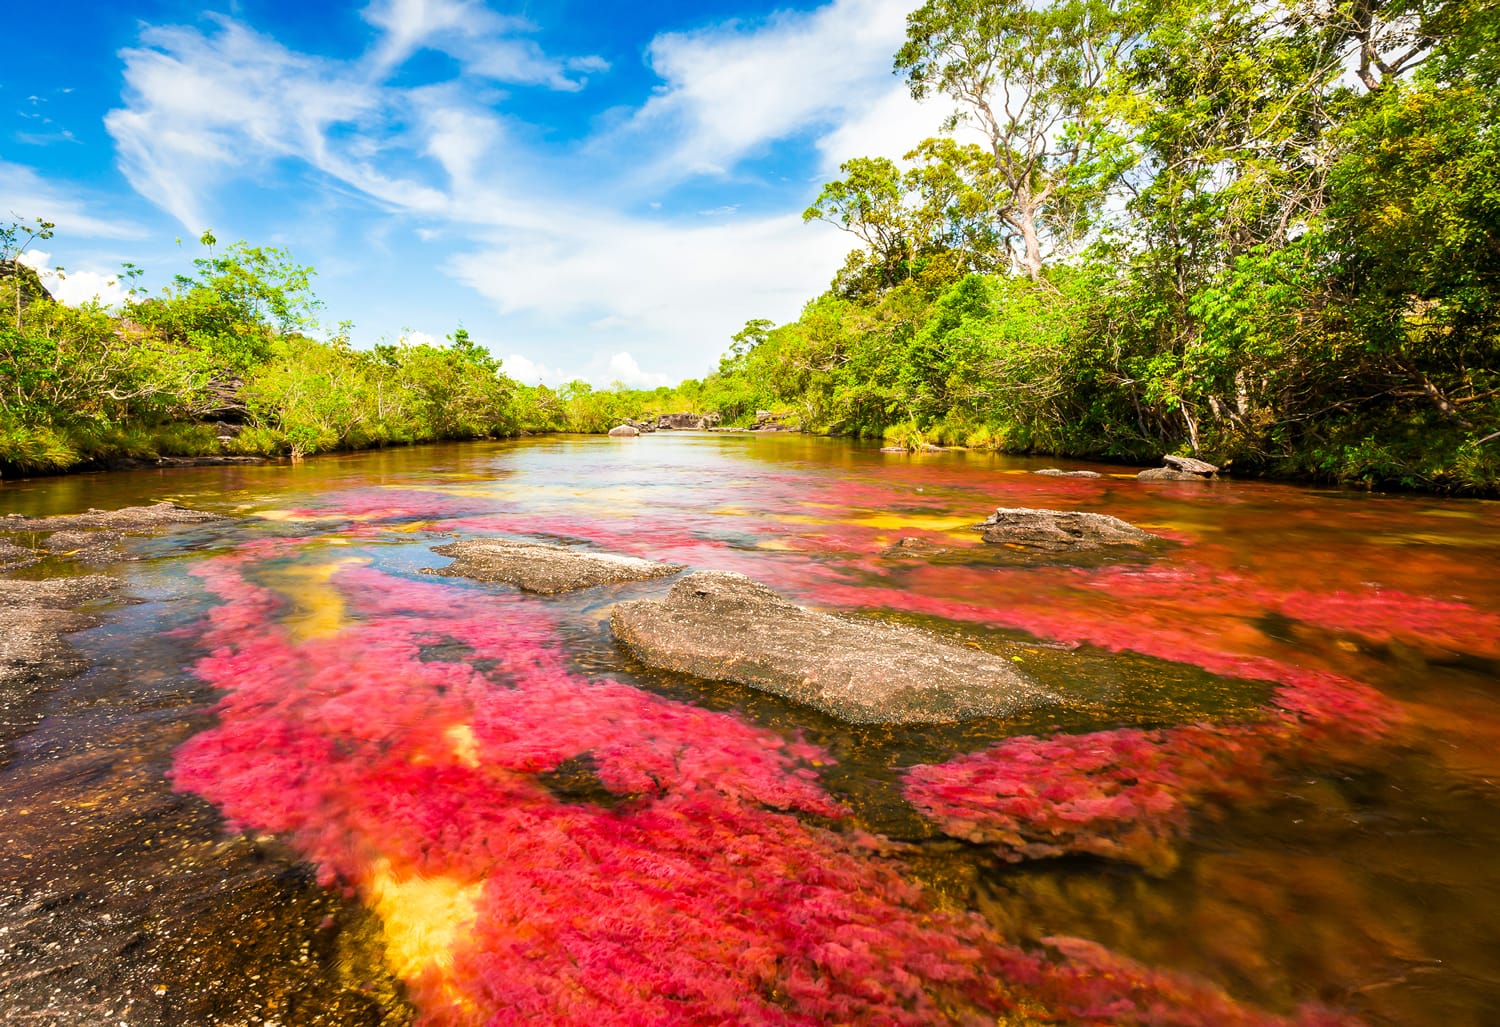 Cano Cristales, a multicolored river in Colombia. 